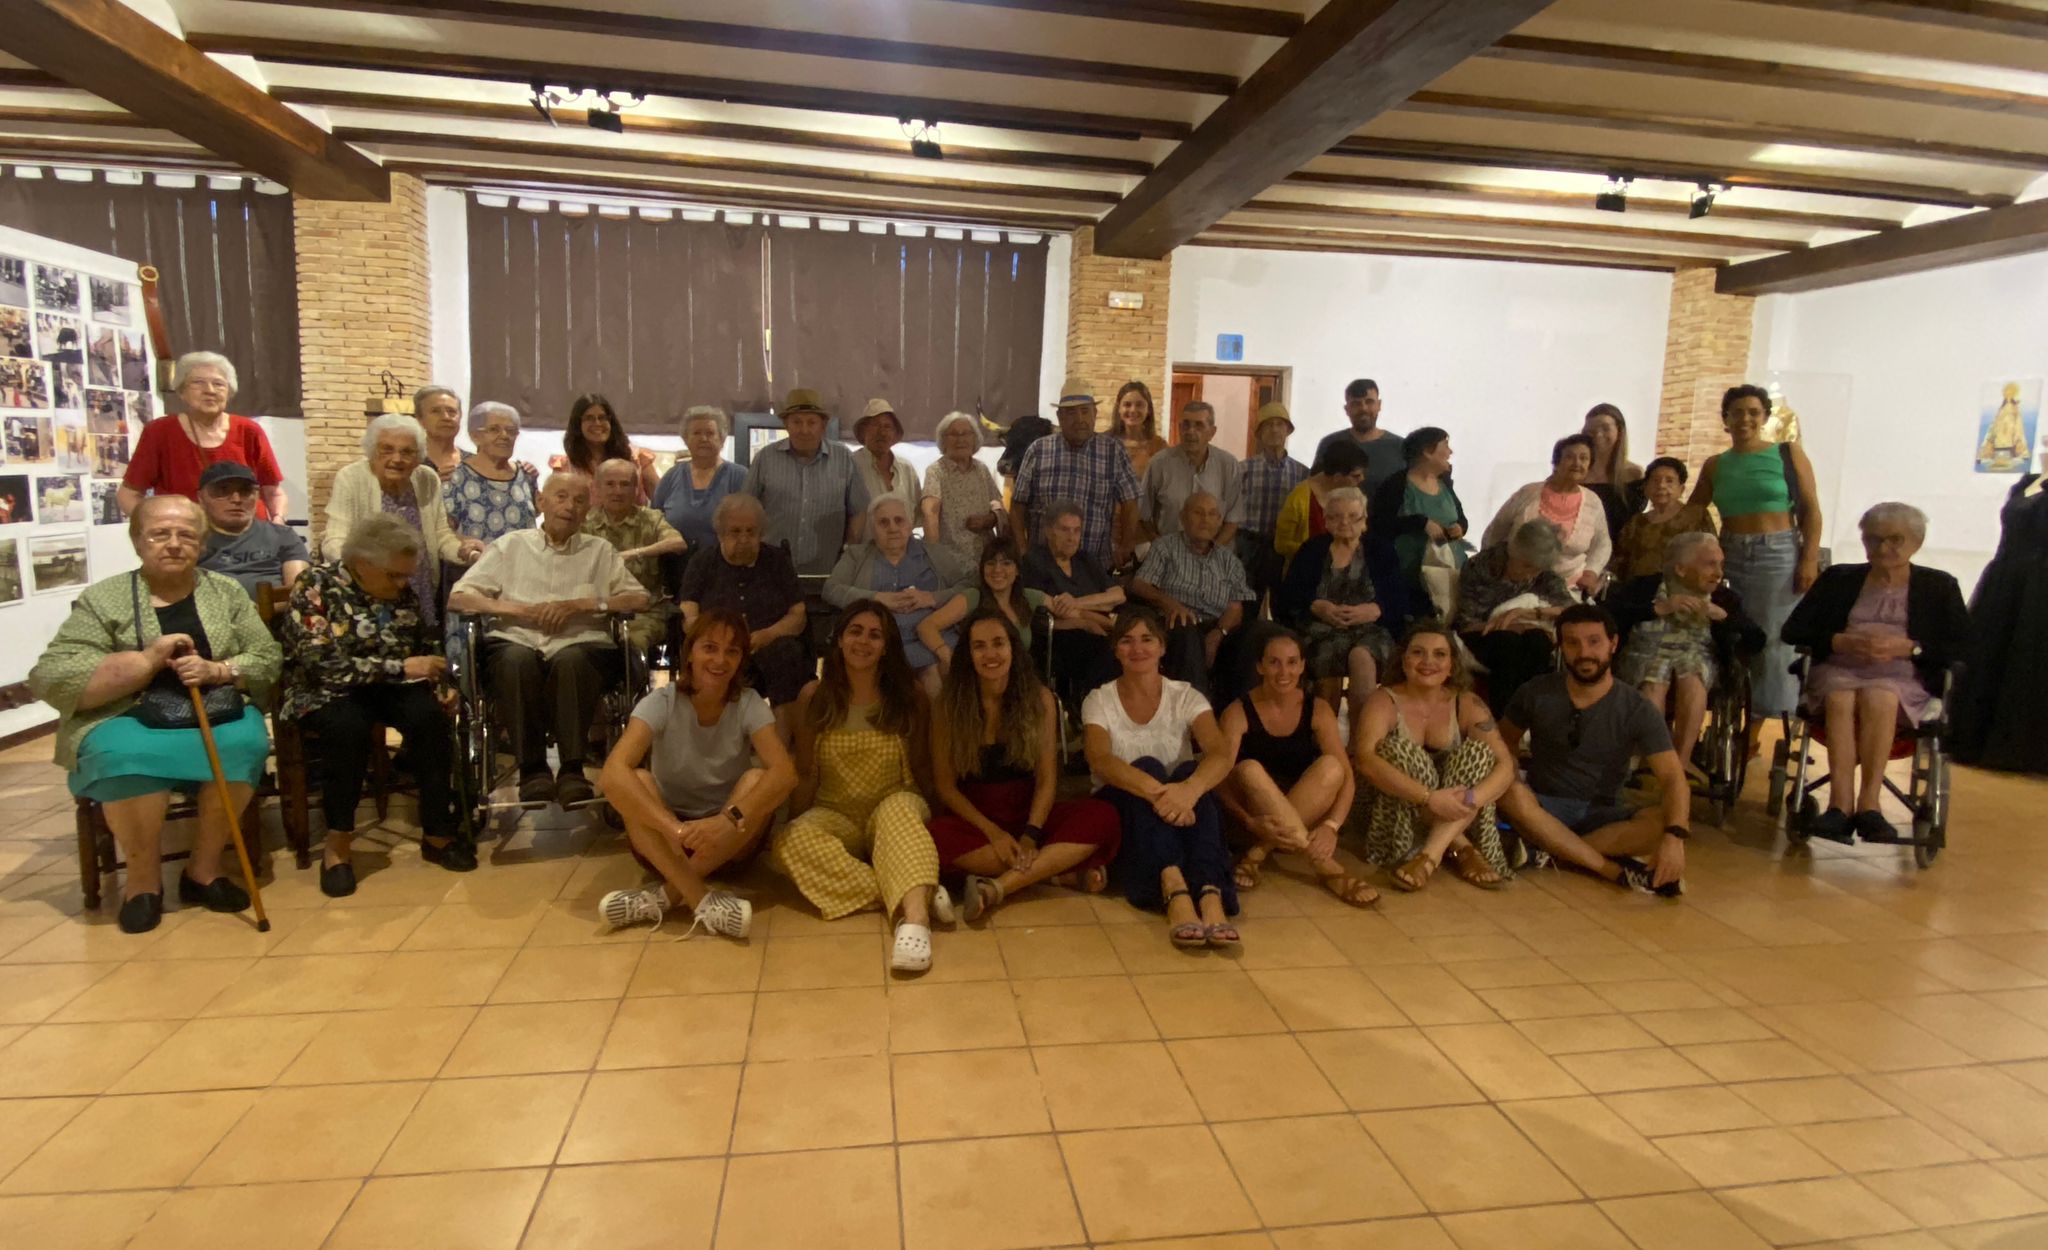 Usuàries i usuaris amb personal del C.D. La Font de la Figuera visitan l'exposició “Festes Patronals” en el museu Històric-Etnològic